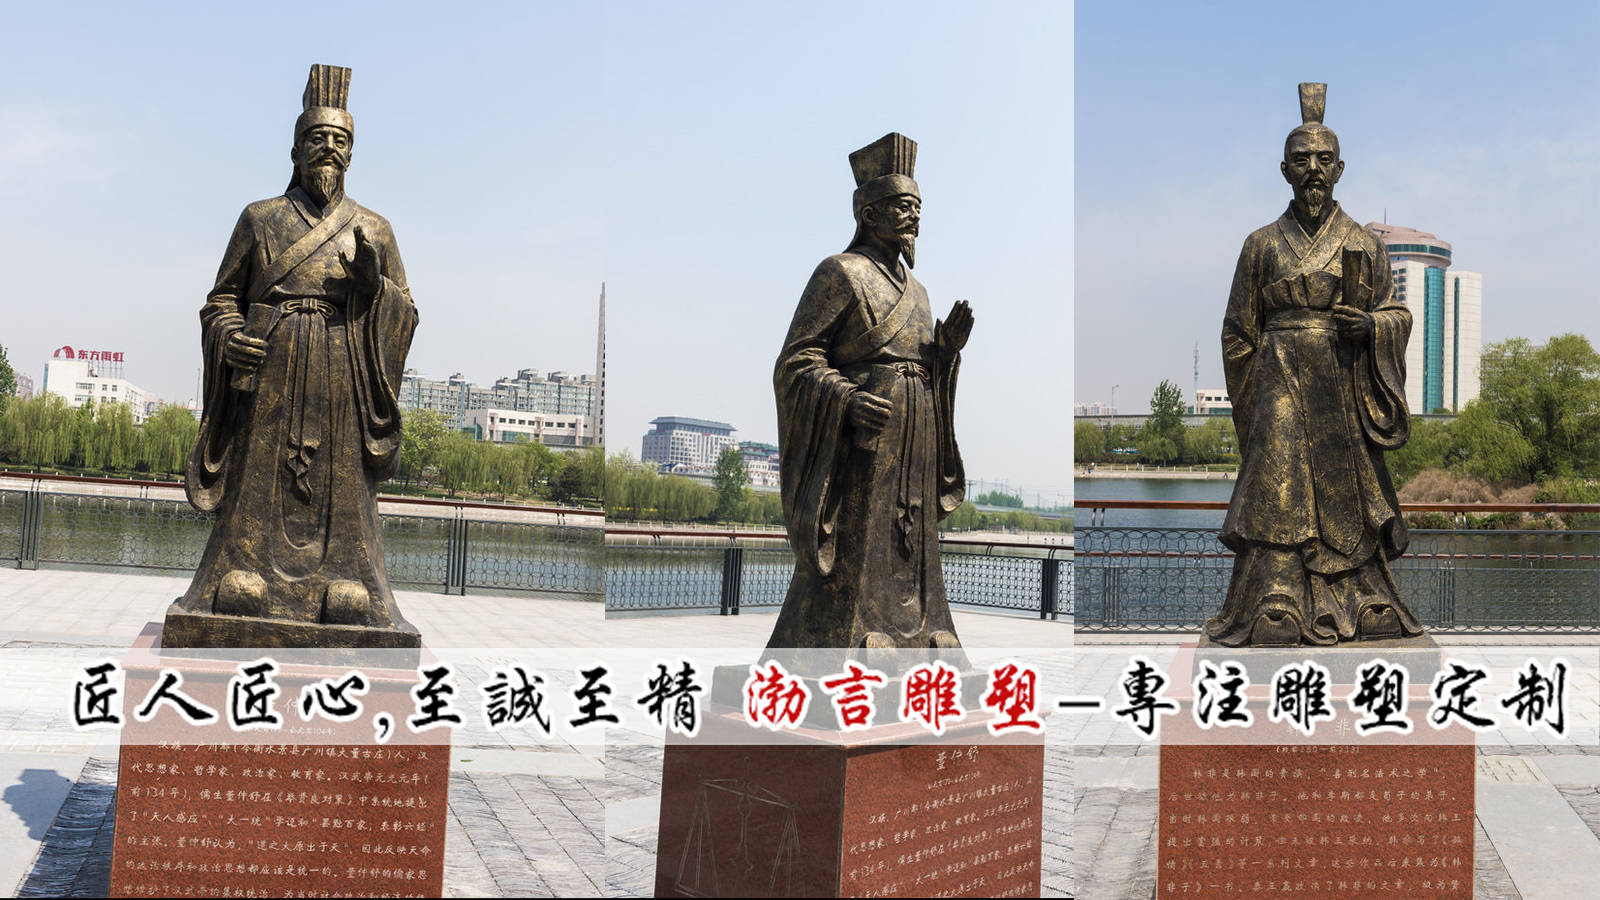 体现了大秦帝国尚武务实的精神,并且其雄伟的气魄在中国雕塑史上异军